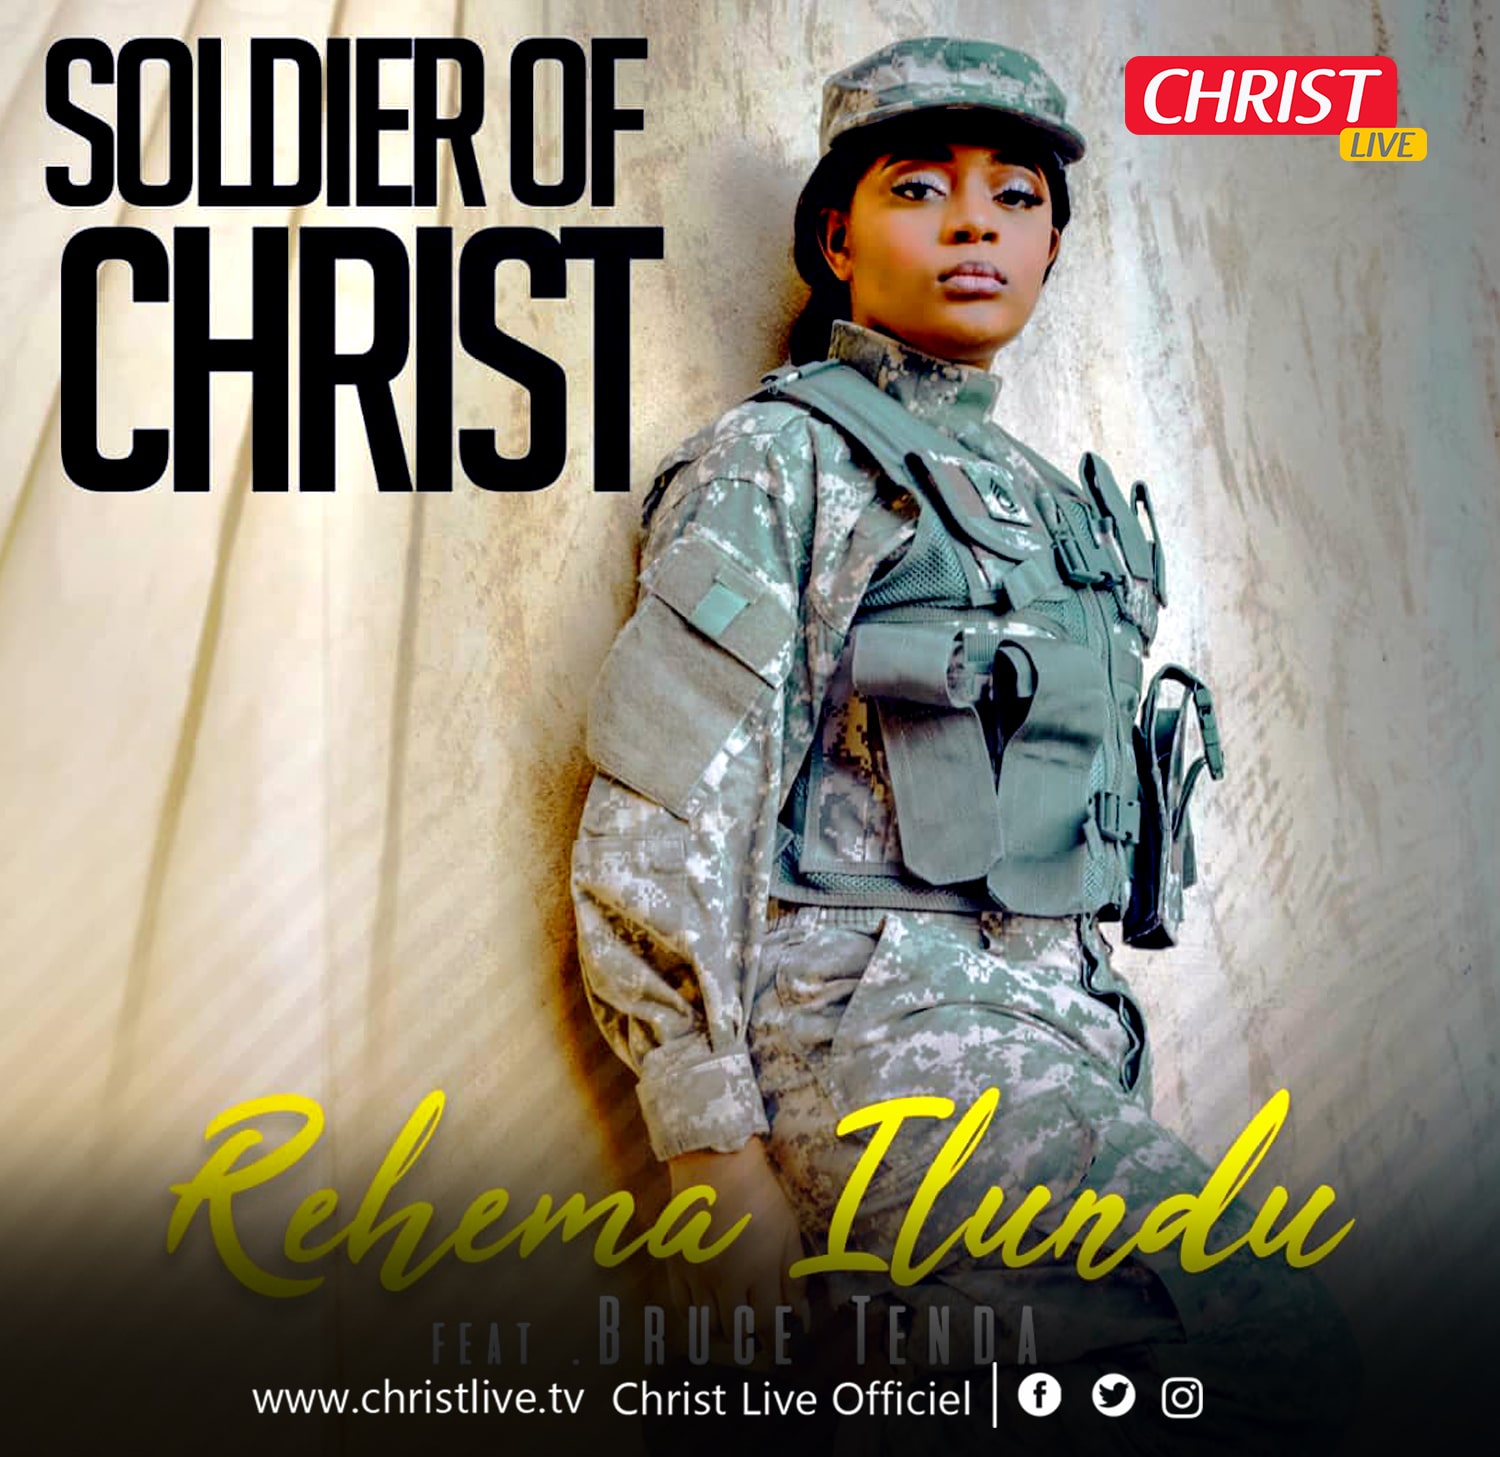 les « SOLDIER OF CHRIST » Rehema Ilundu et BRUCE TENDA sont là.